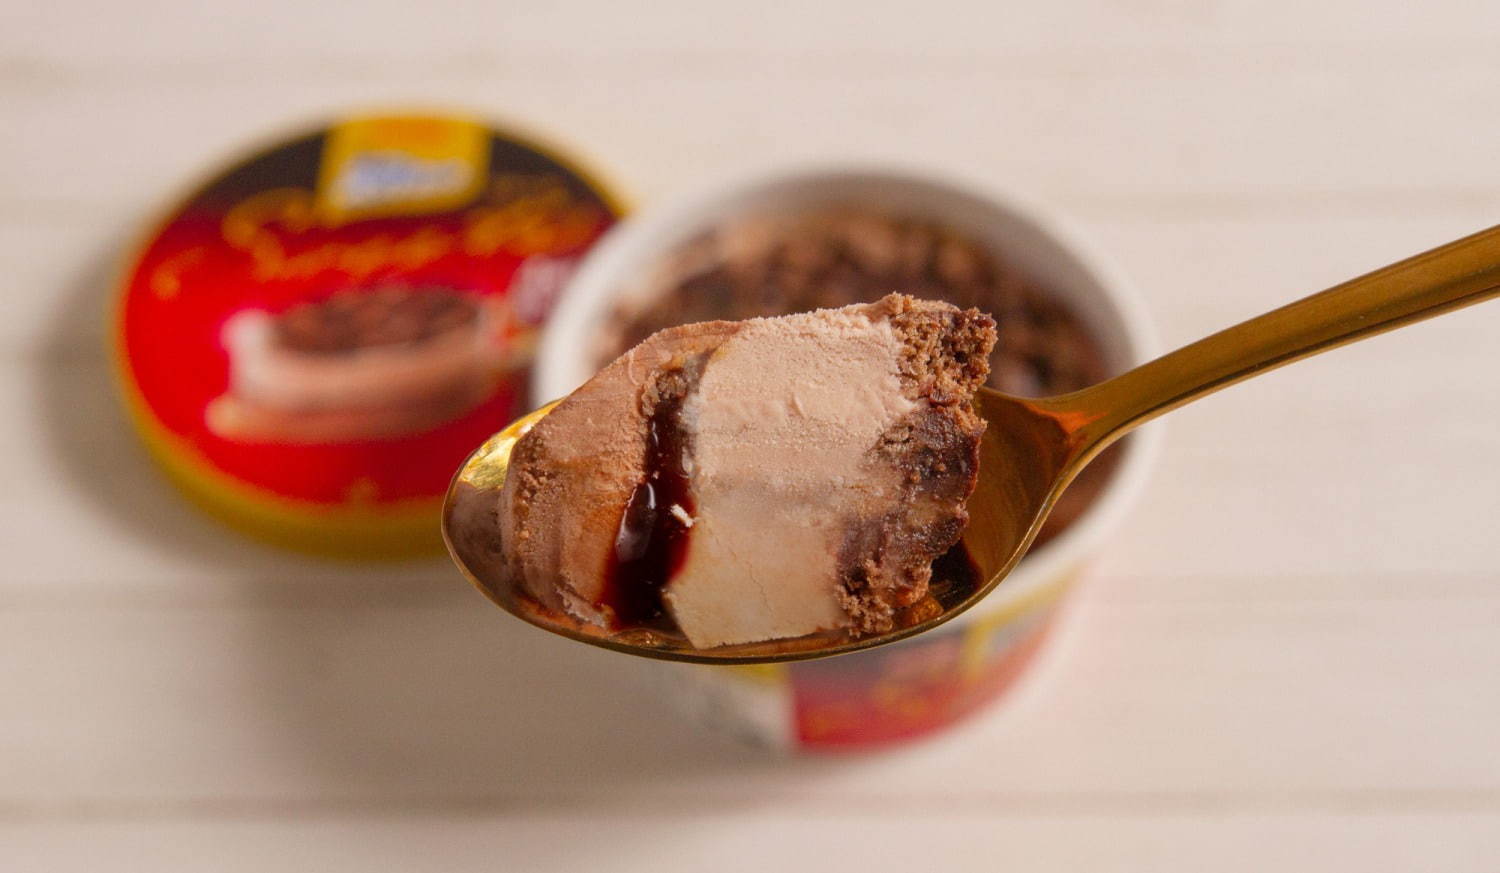 明治 エッセル スーパーカップ 4層仕立て ガトーショコラ 味アイス とろりチョコ風味ソースをイン ファッションプレス